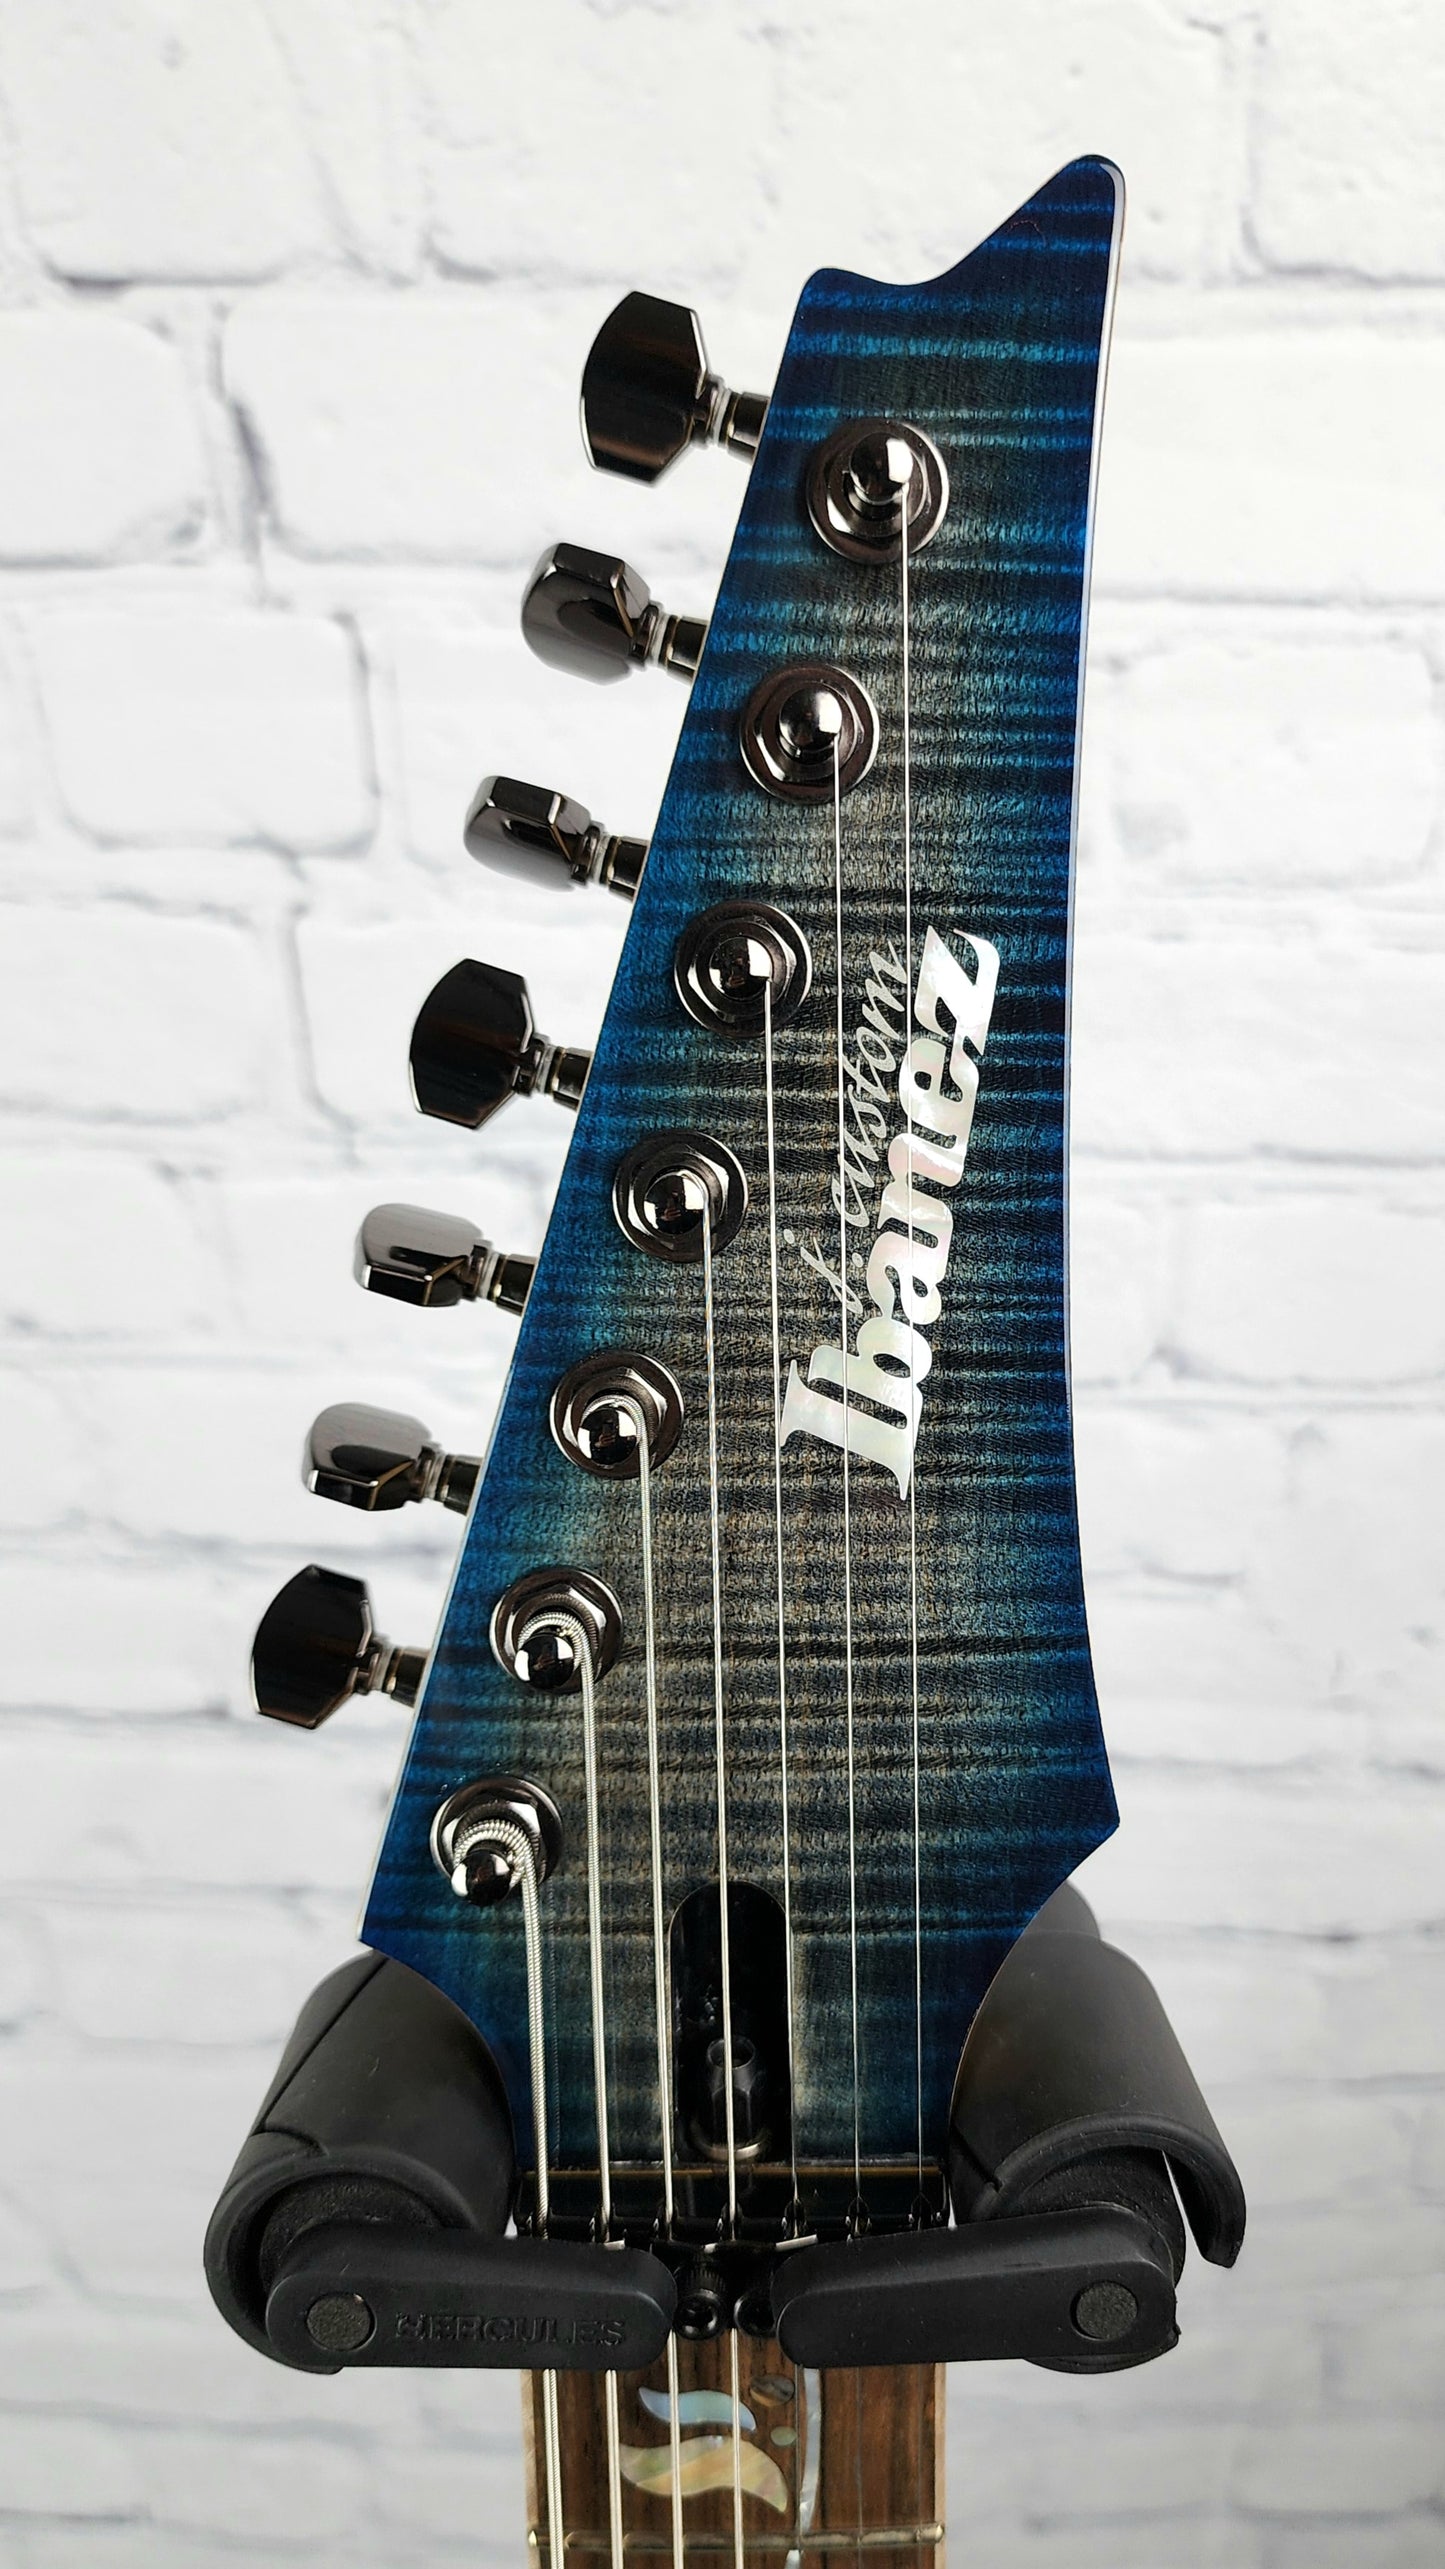 Ibanez J Custom RG8527Z SDE 7 String Electric Guitar Sodalite Japan